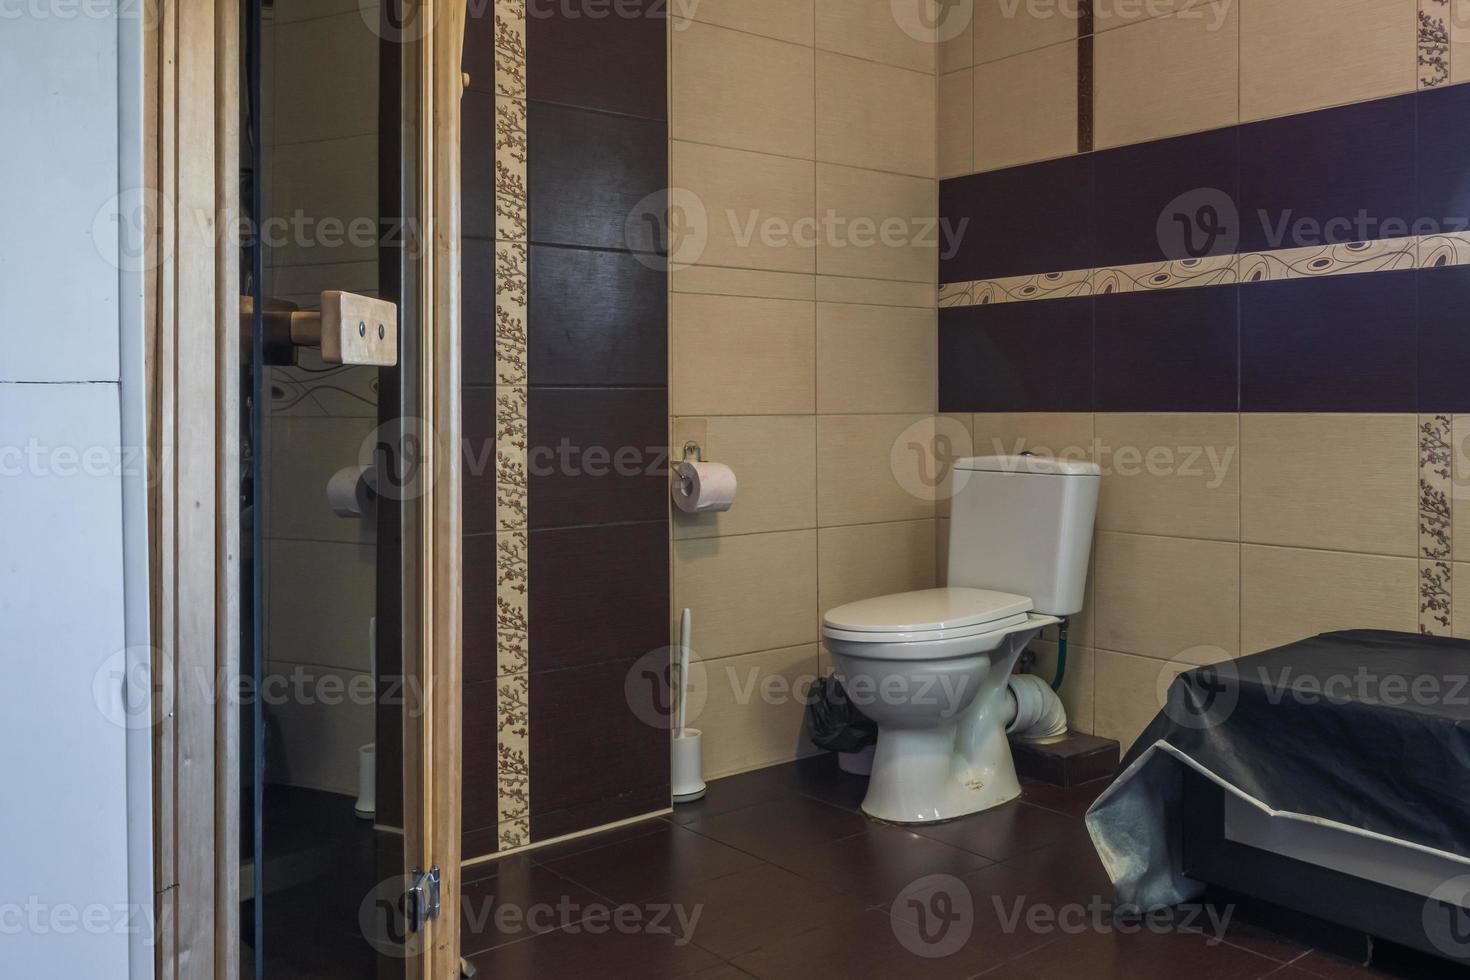 toalett skål och Övrig möbel i toalett toalett foto